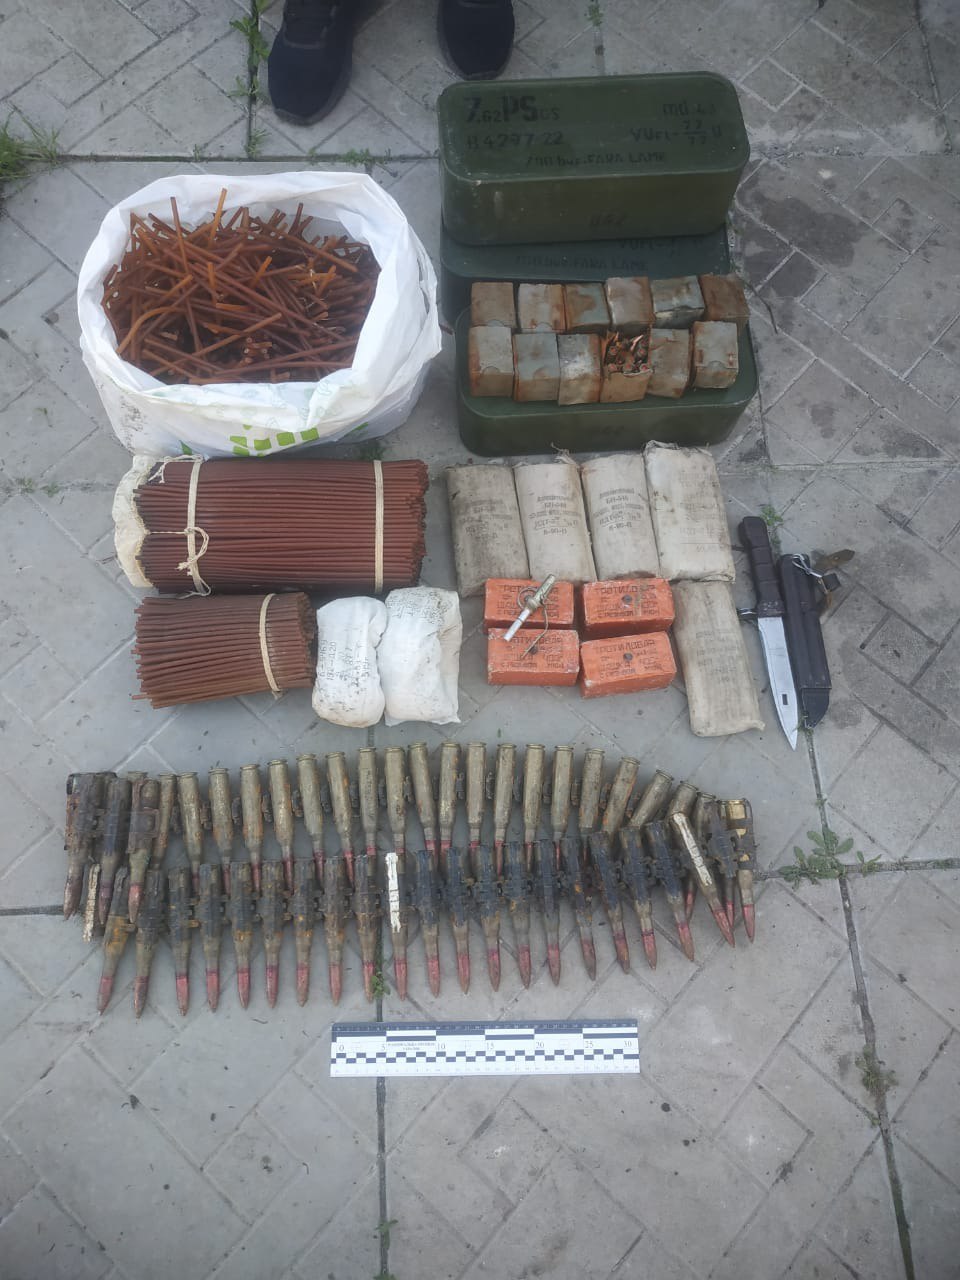 Гранаты и патроны: у жителя Харьковщины нашли широкий ассортимент боеприпасов